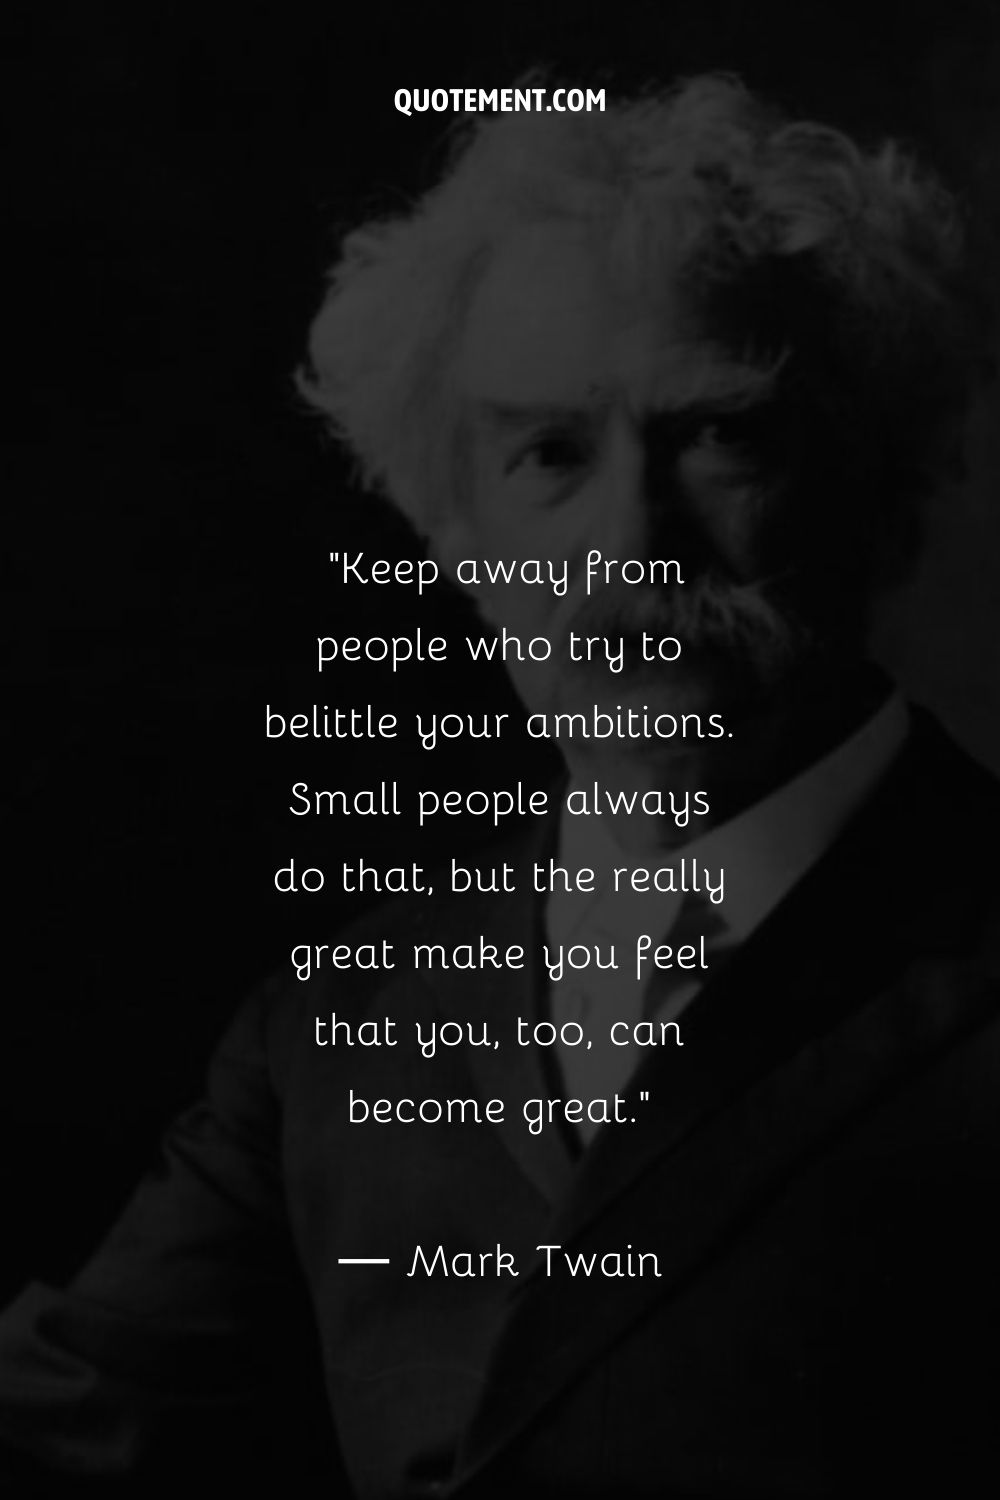 Retrato de Mark Twain representando una cita inspiradora de Mark Twain